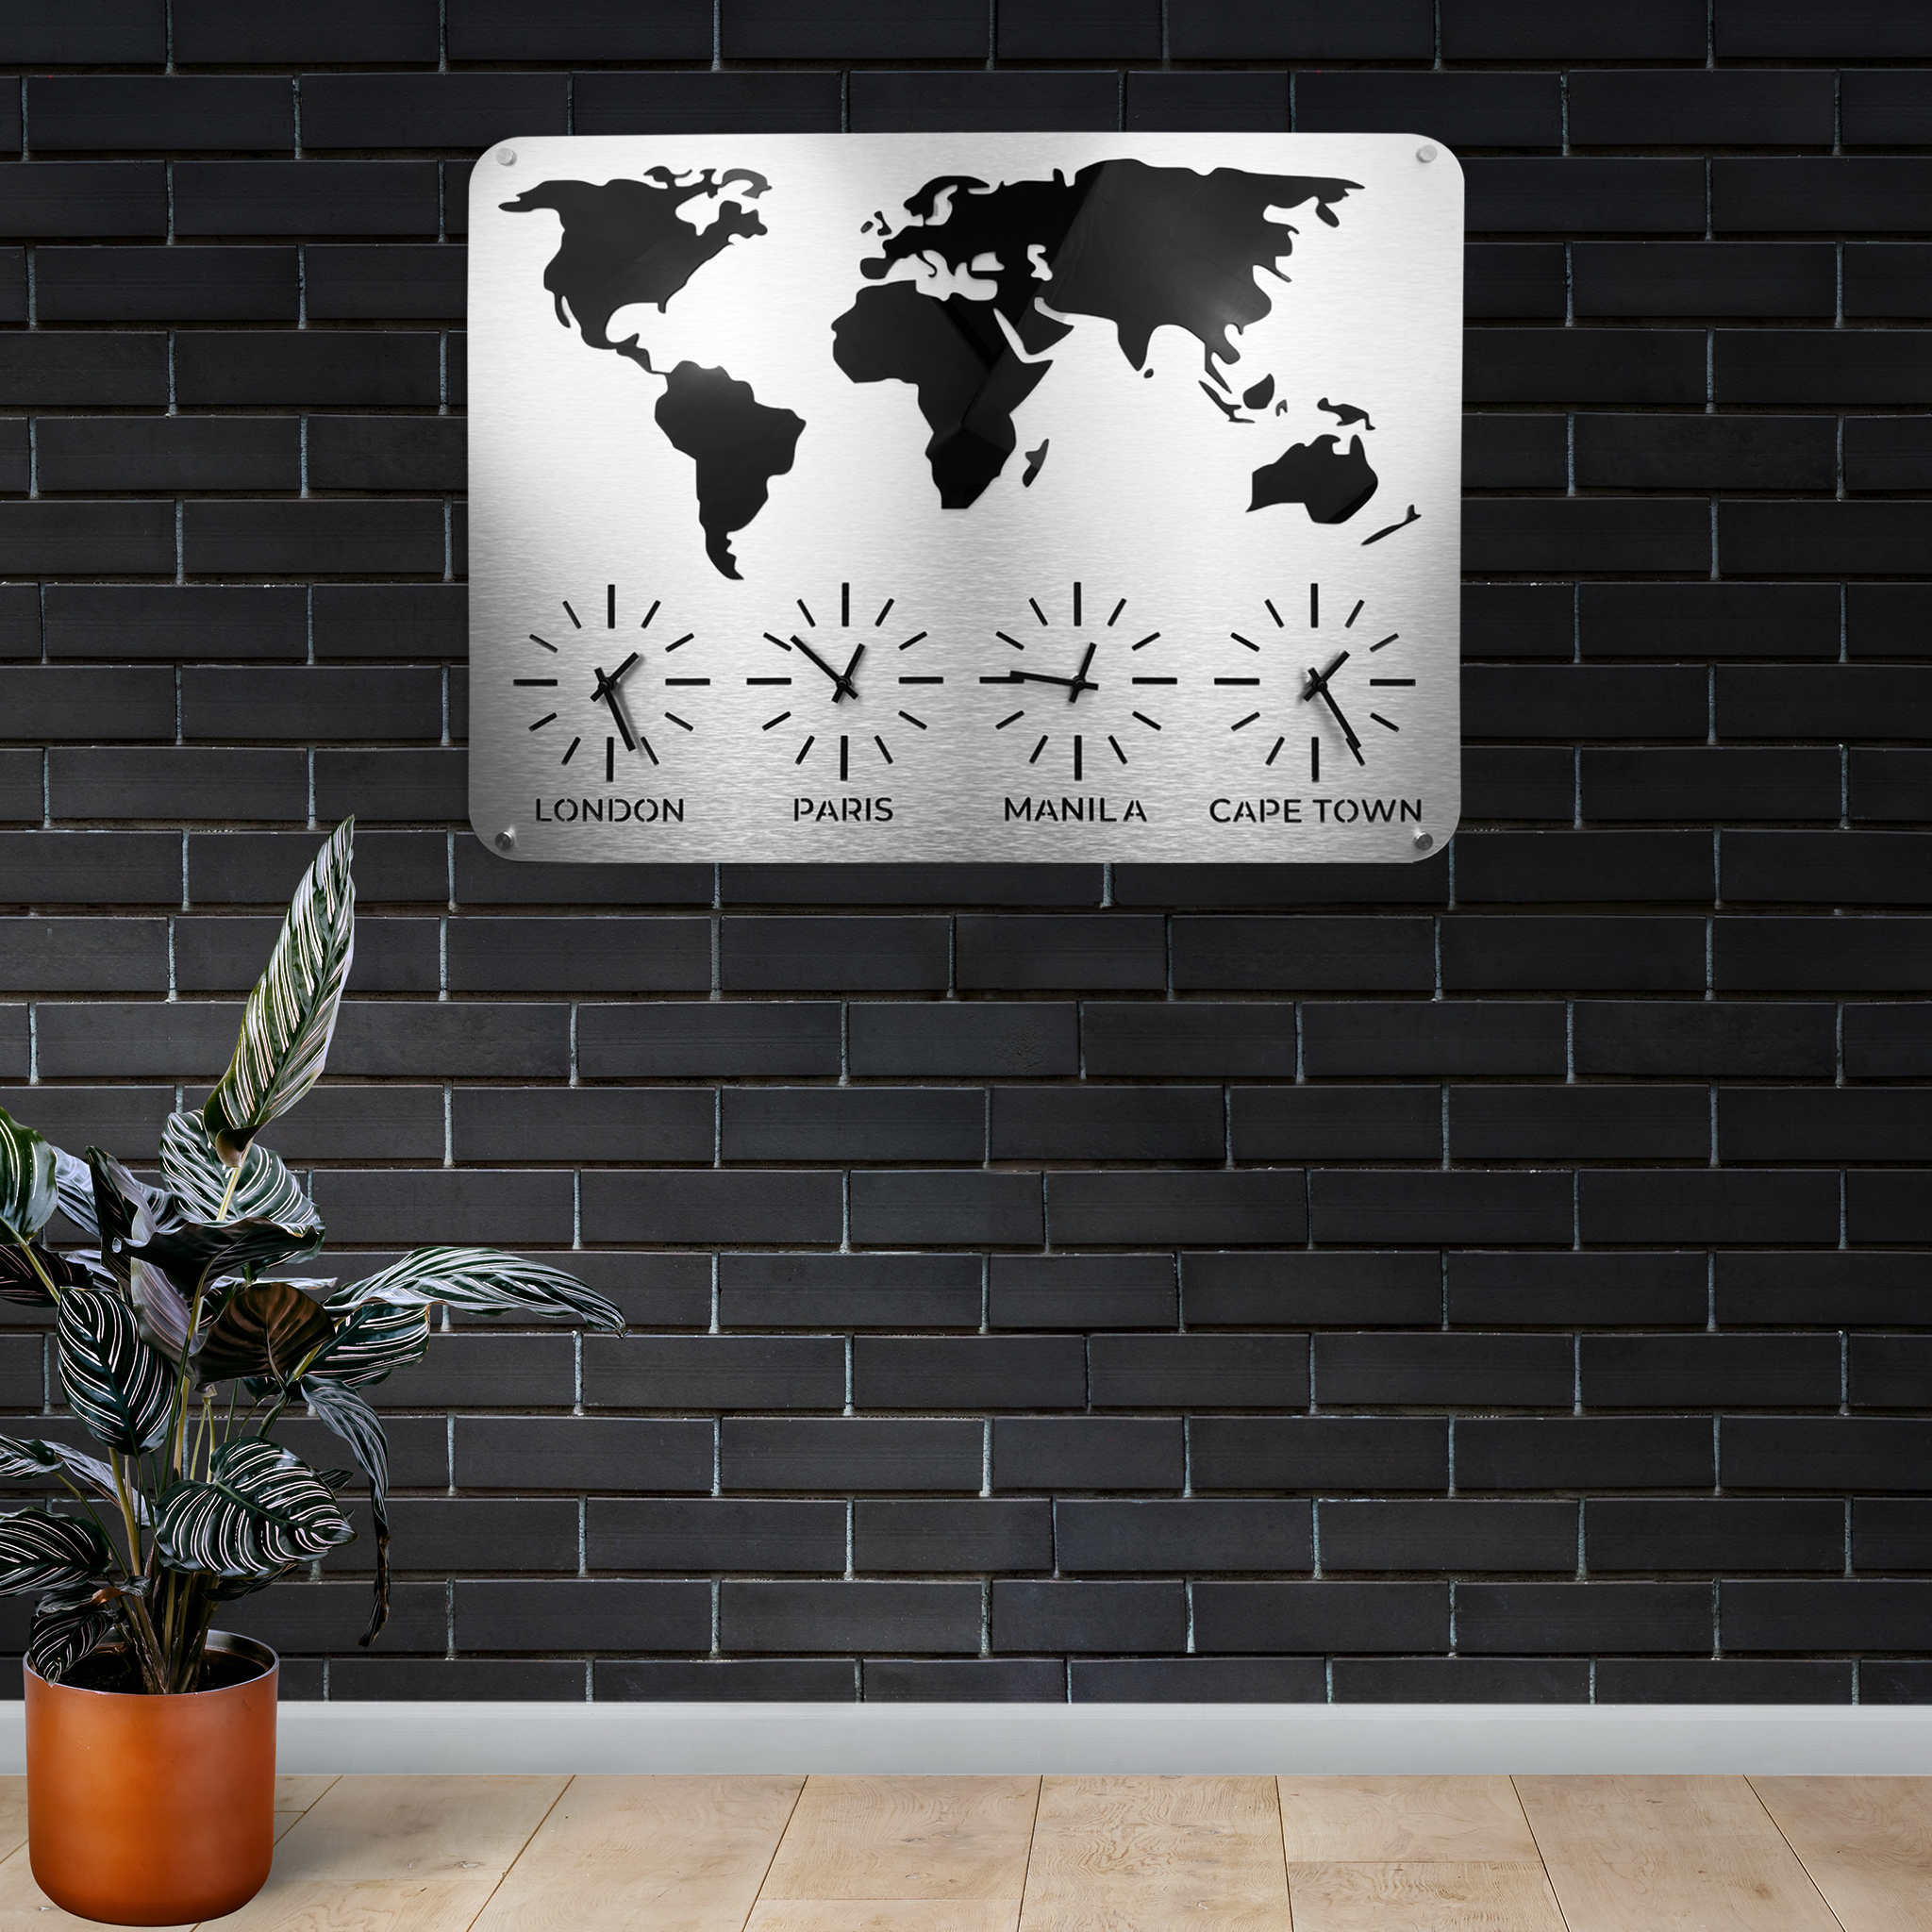 3D MAP TIME ZONE CLOCK - ALUMADESIGNCO Door Signs - Custom Door Signs For Business & Office